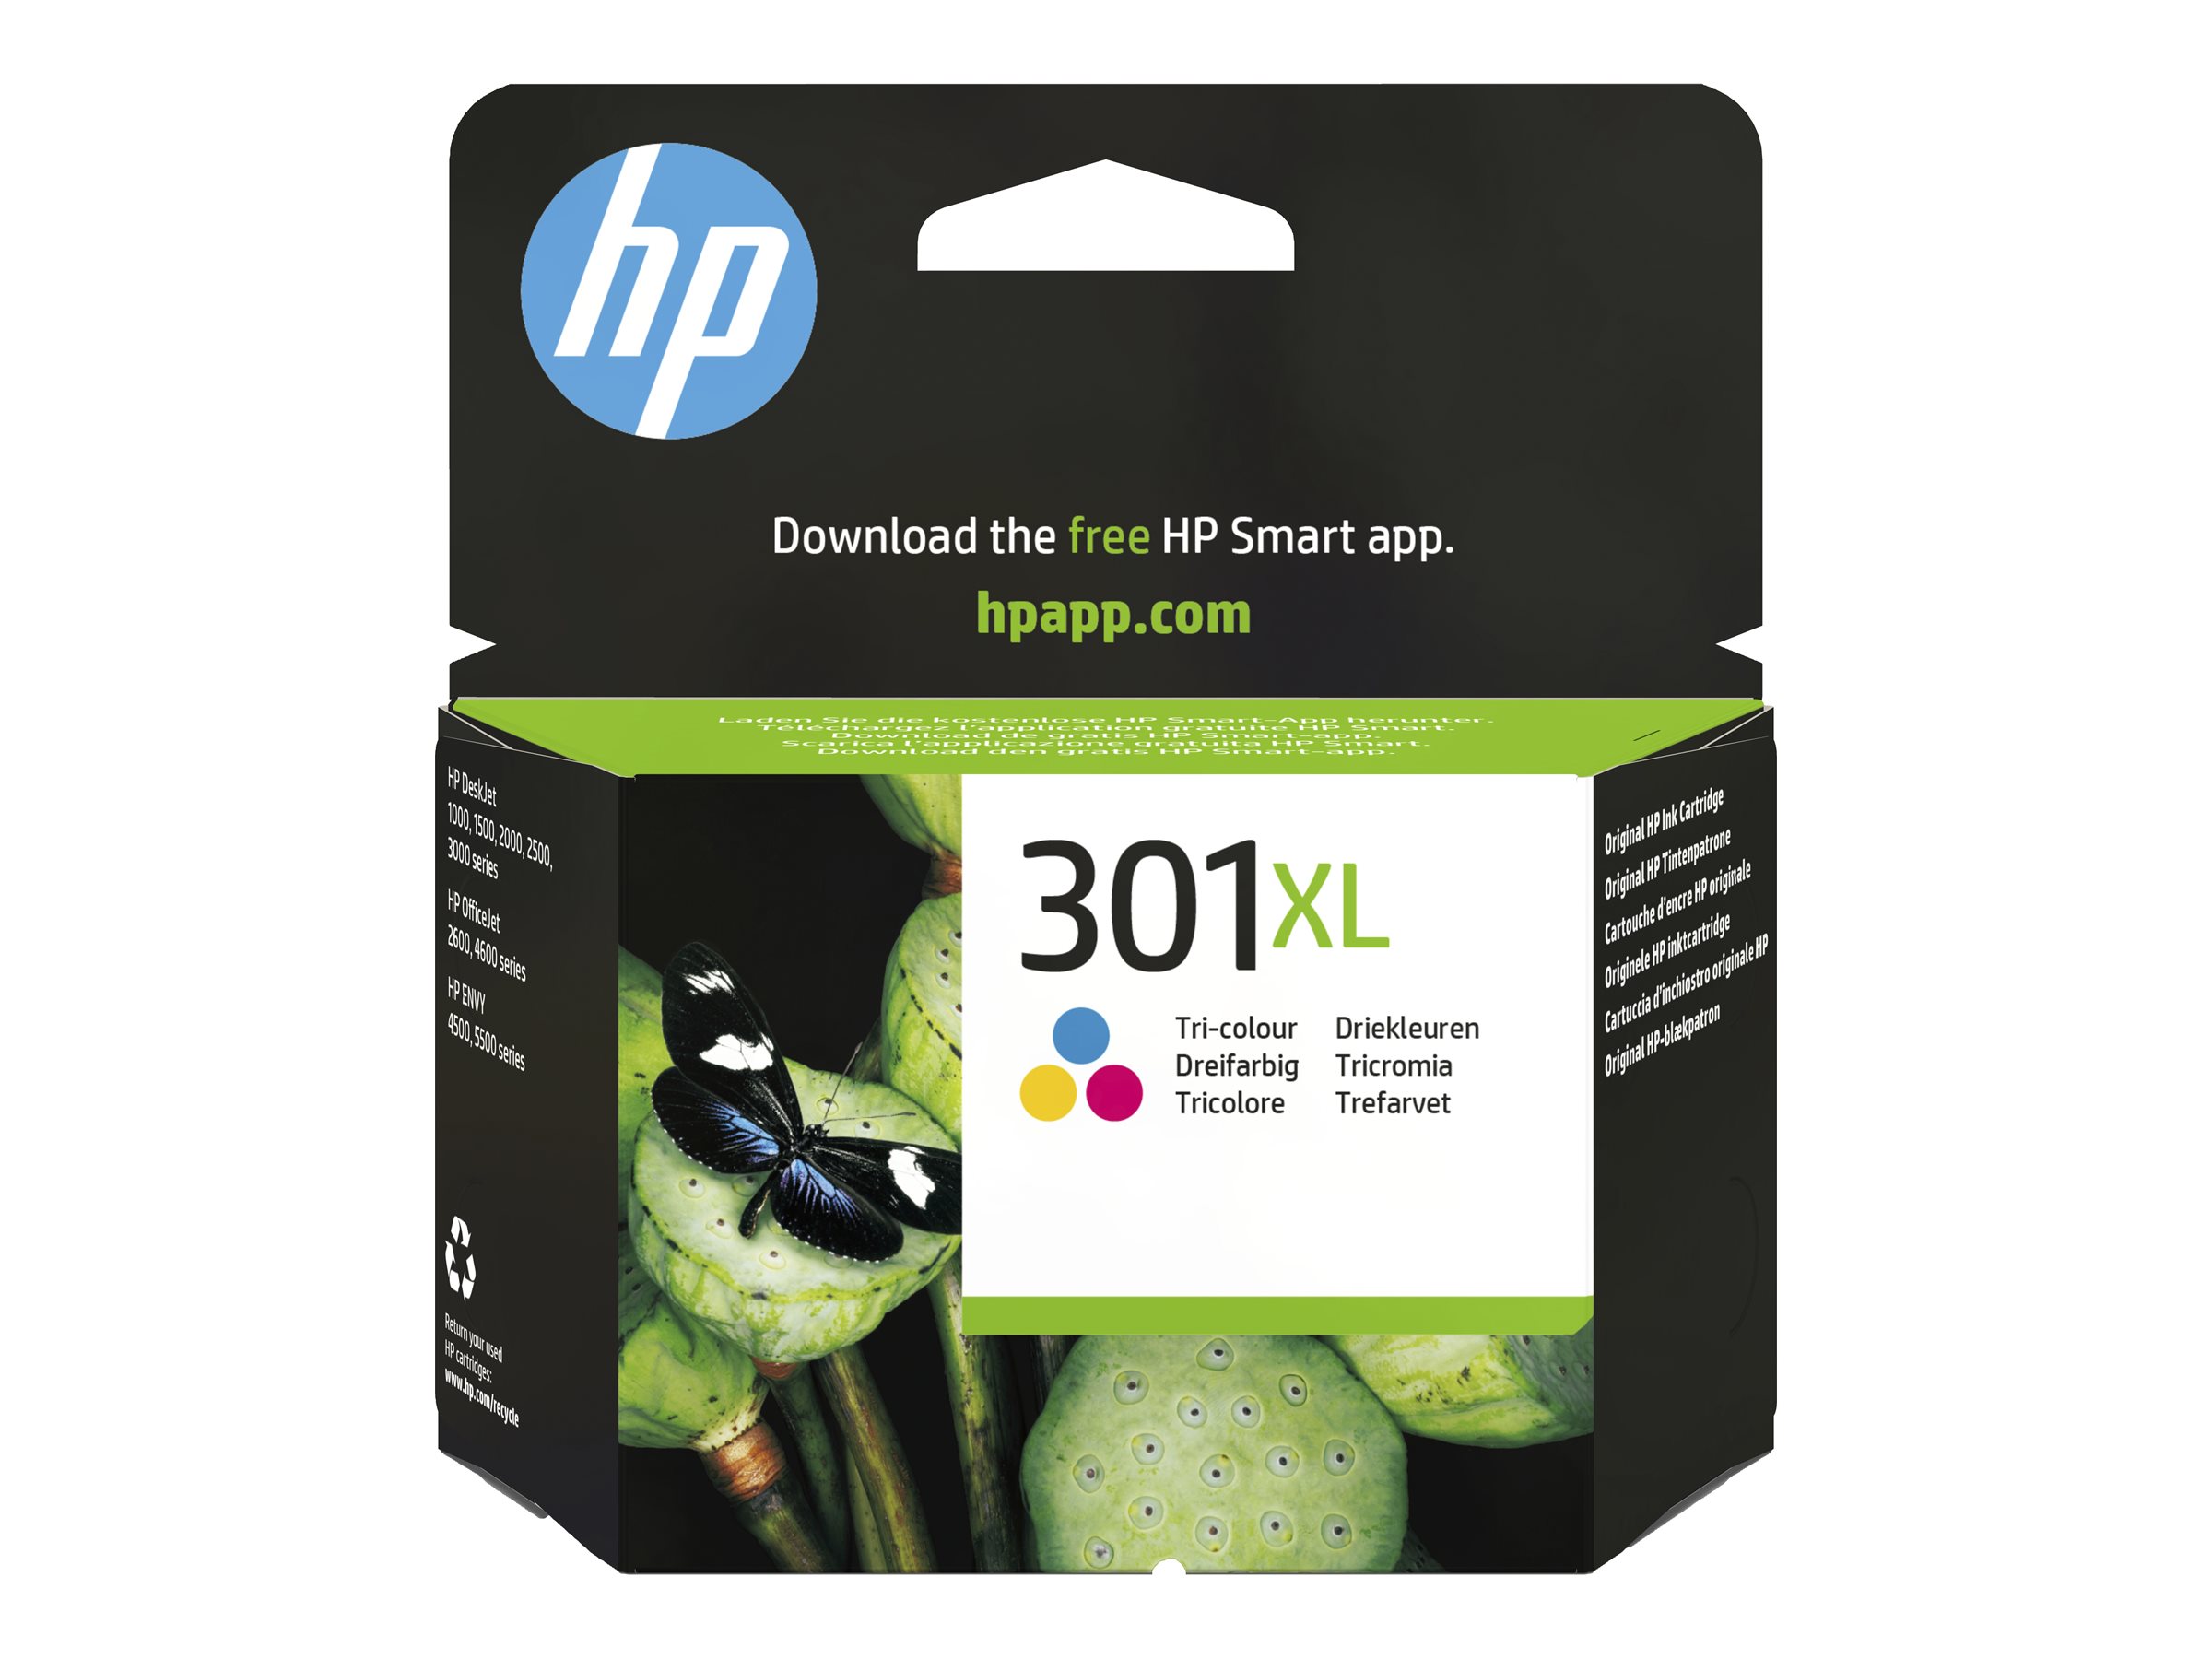 HP 301XL - 6 ml - Hohe Ergiebigkeit - Farbe (Cyan, Magenta, Gelb) - original - Tintenpatrone